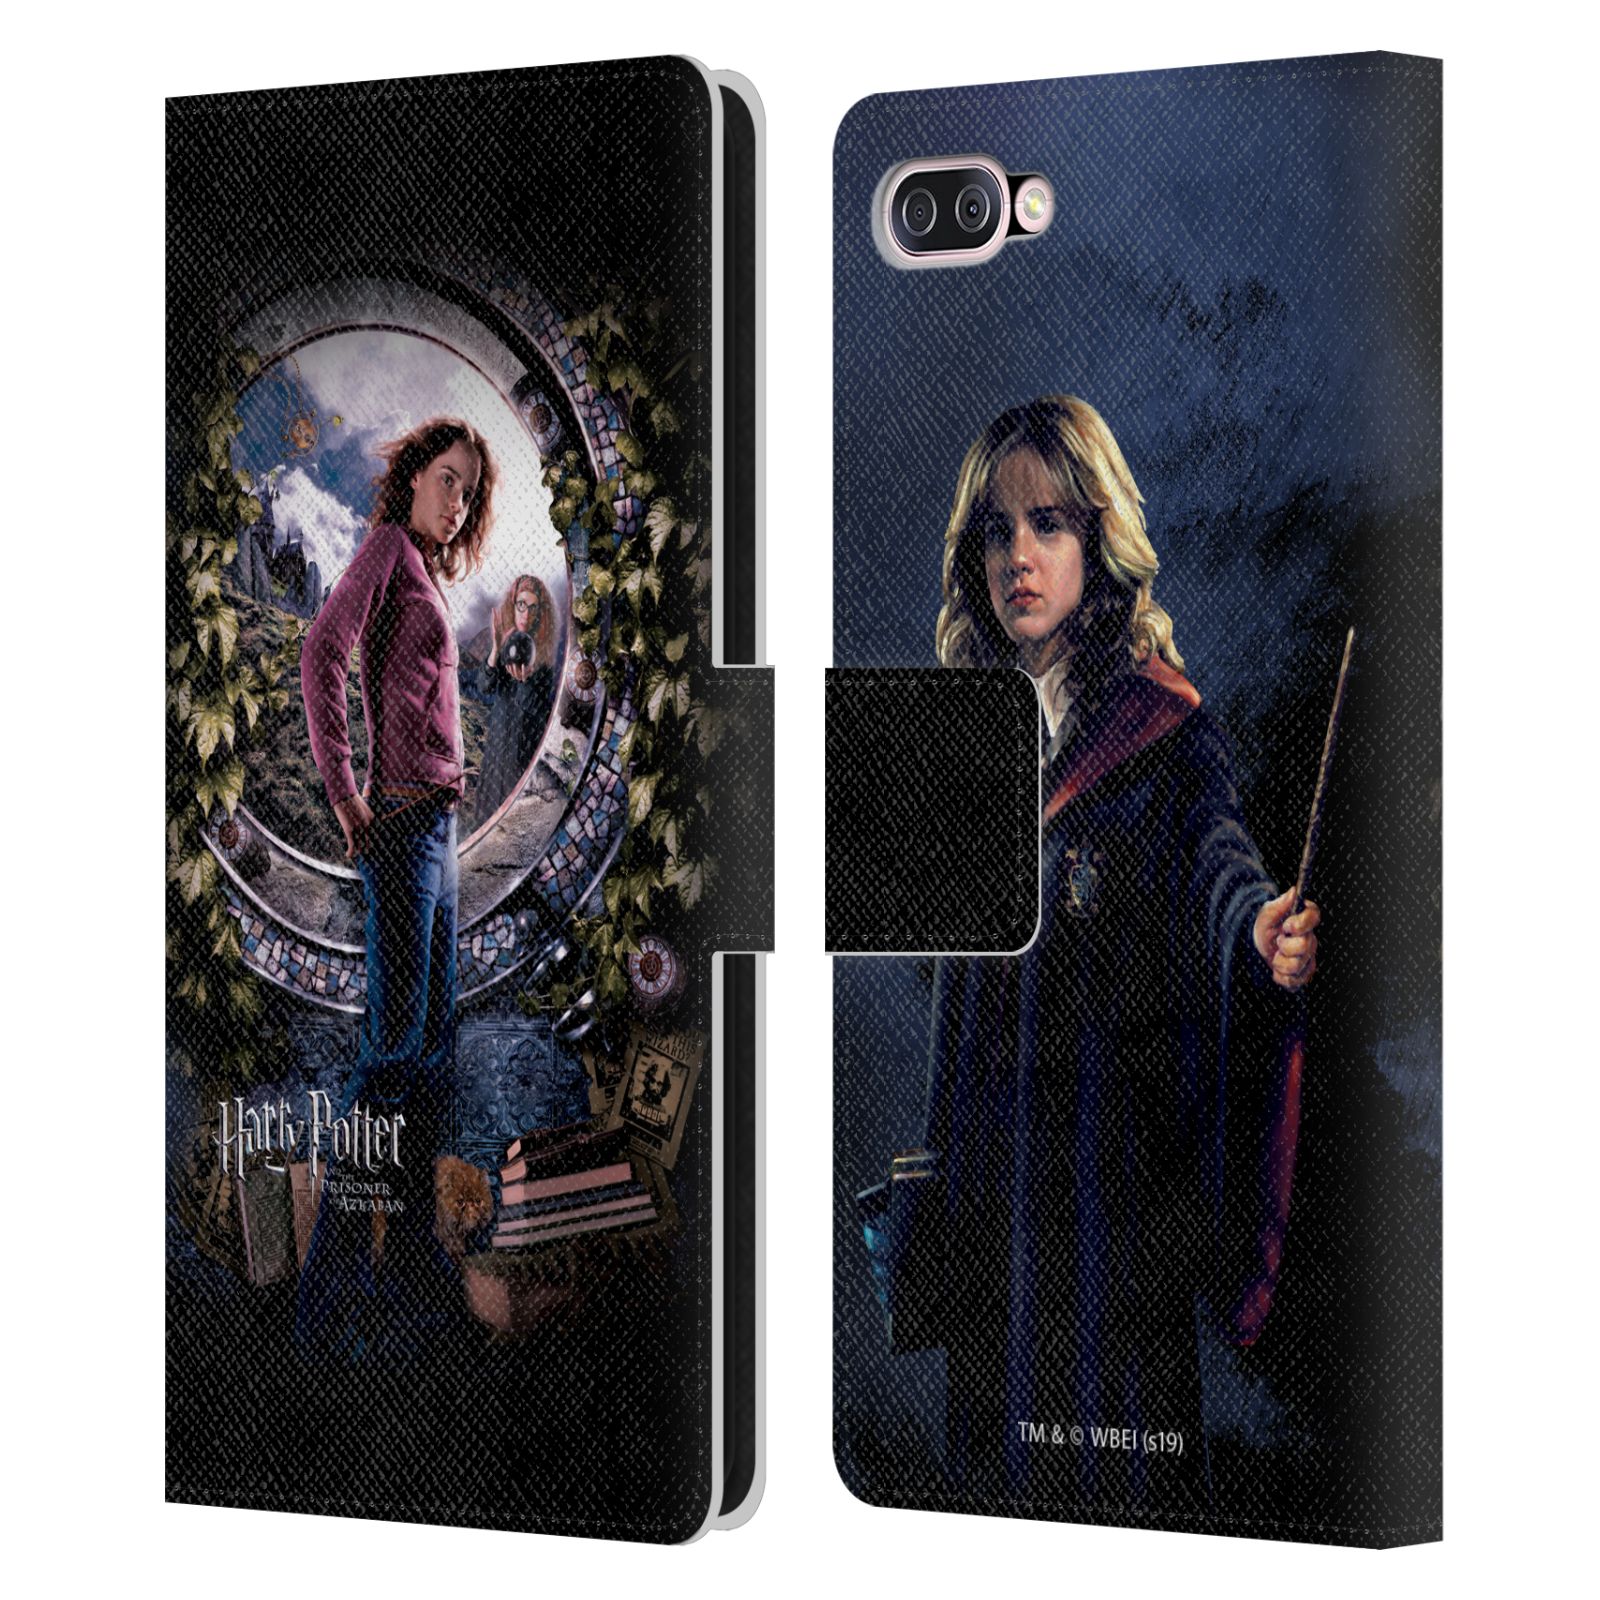 Pouzdro na mobil Asus Zenfone 4 Max (ZC554KL)  - HEAD CASE - Harry Potter - Vězeň z Azkabanu - Hermiona